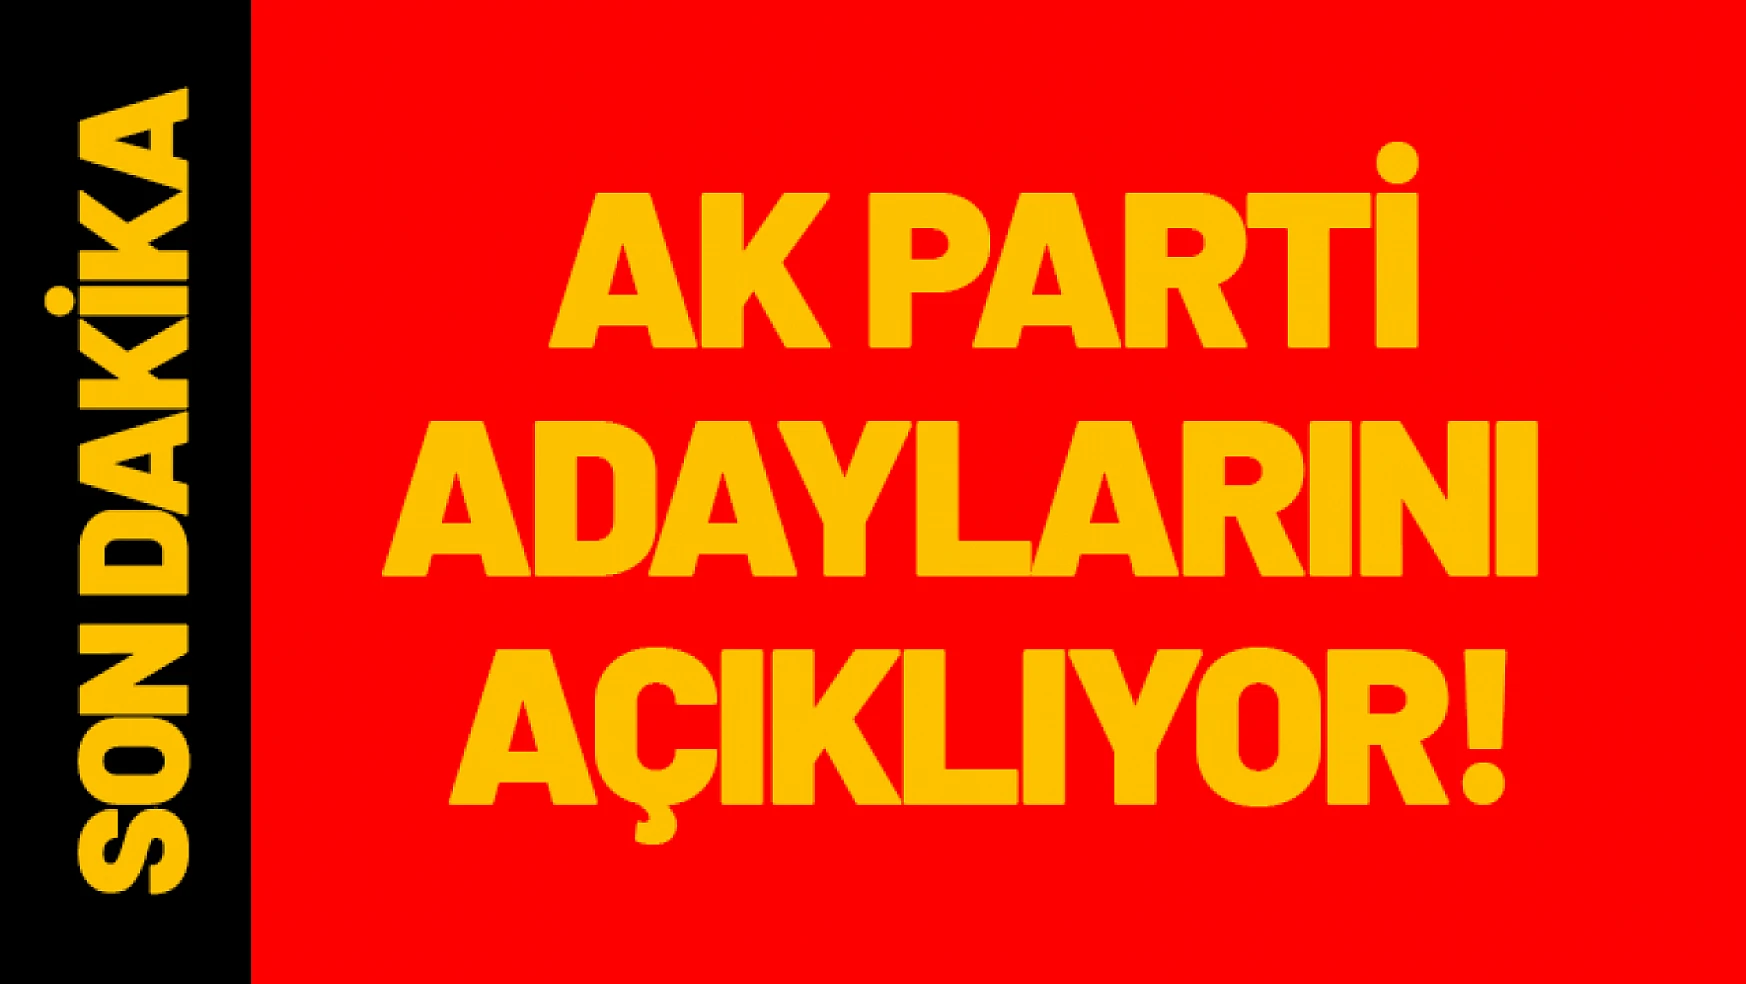 AK Parti Adaylarını Açıklıyor...